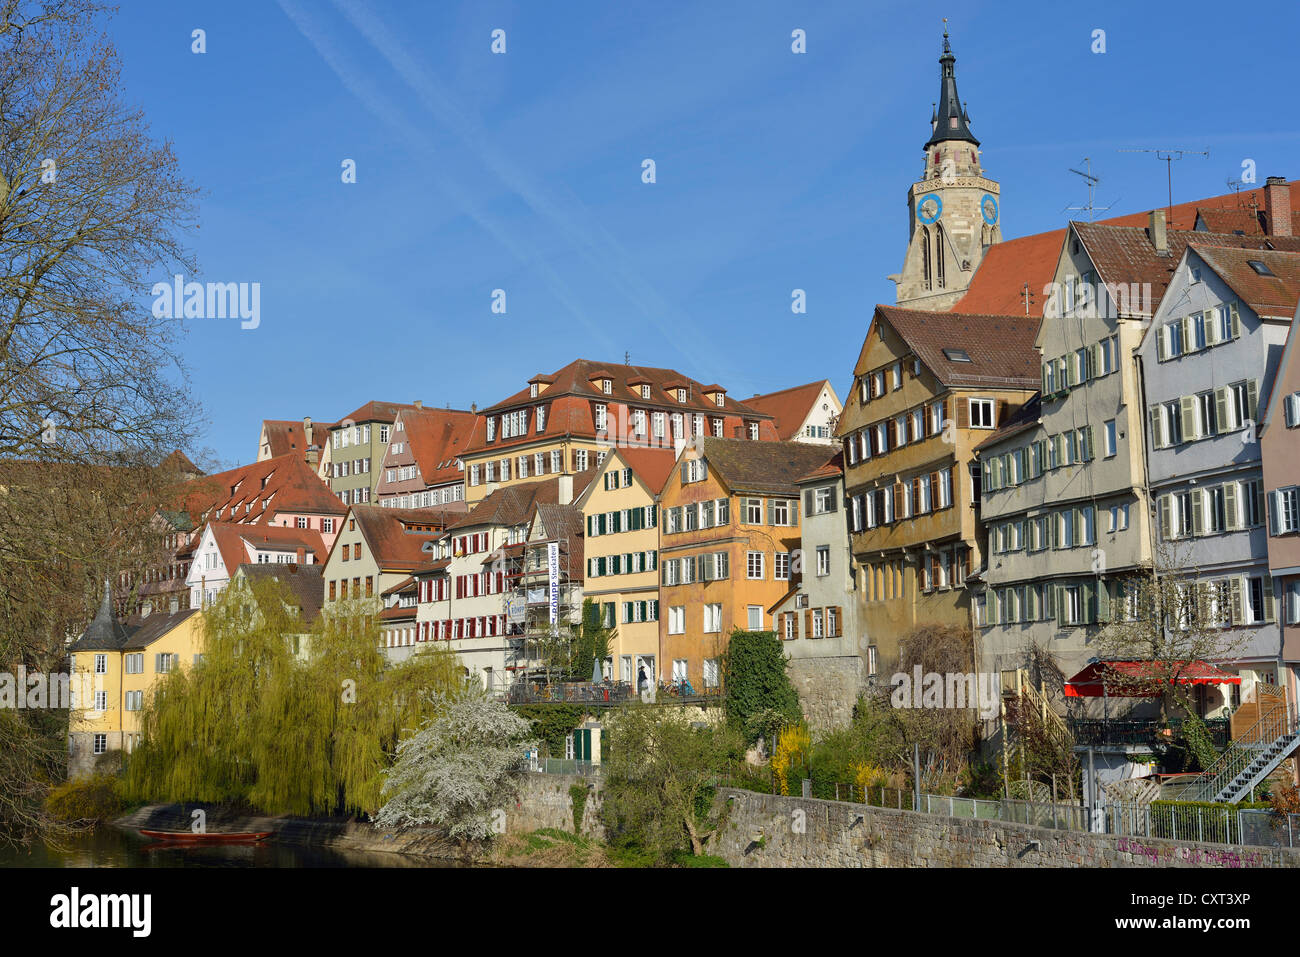 Row of houses on the Neckar river, Tuebingen, Baden-Wuerttemberg, Germany, Europe Stock Photo